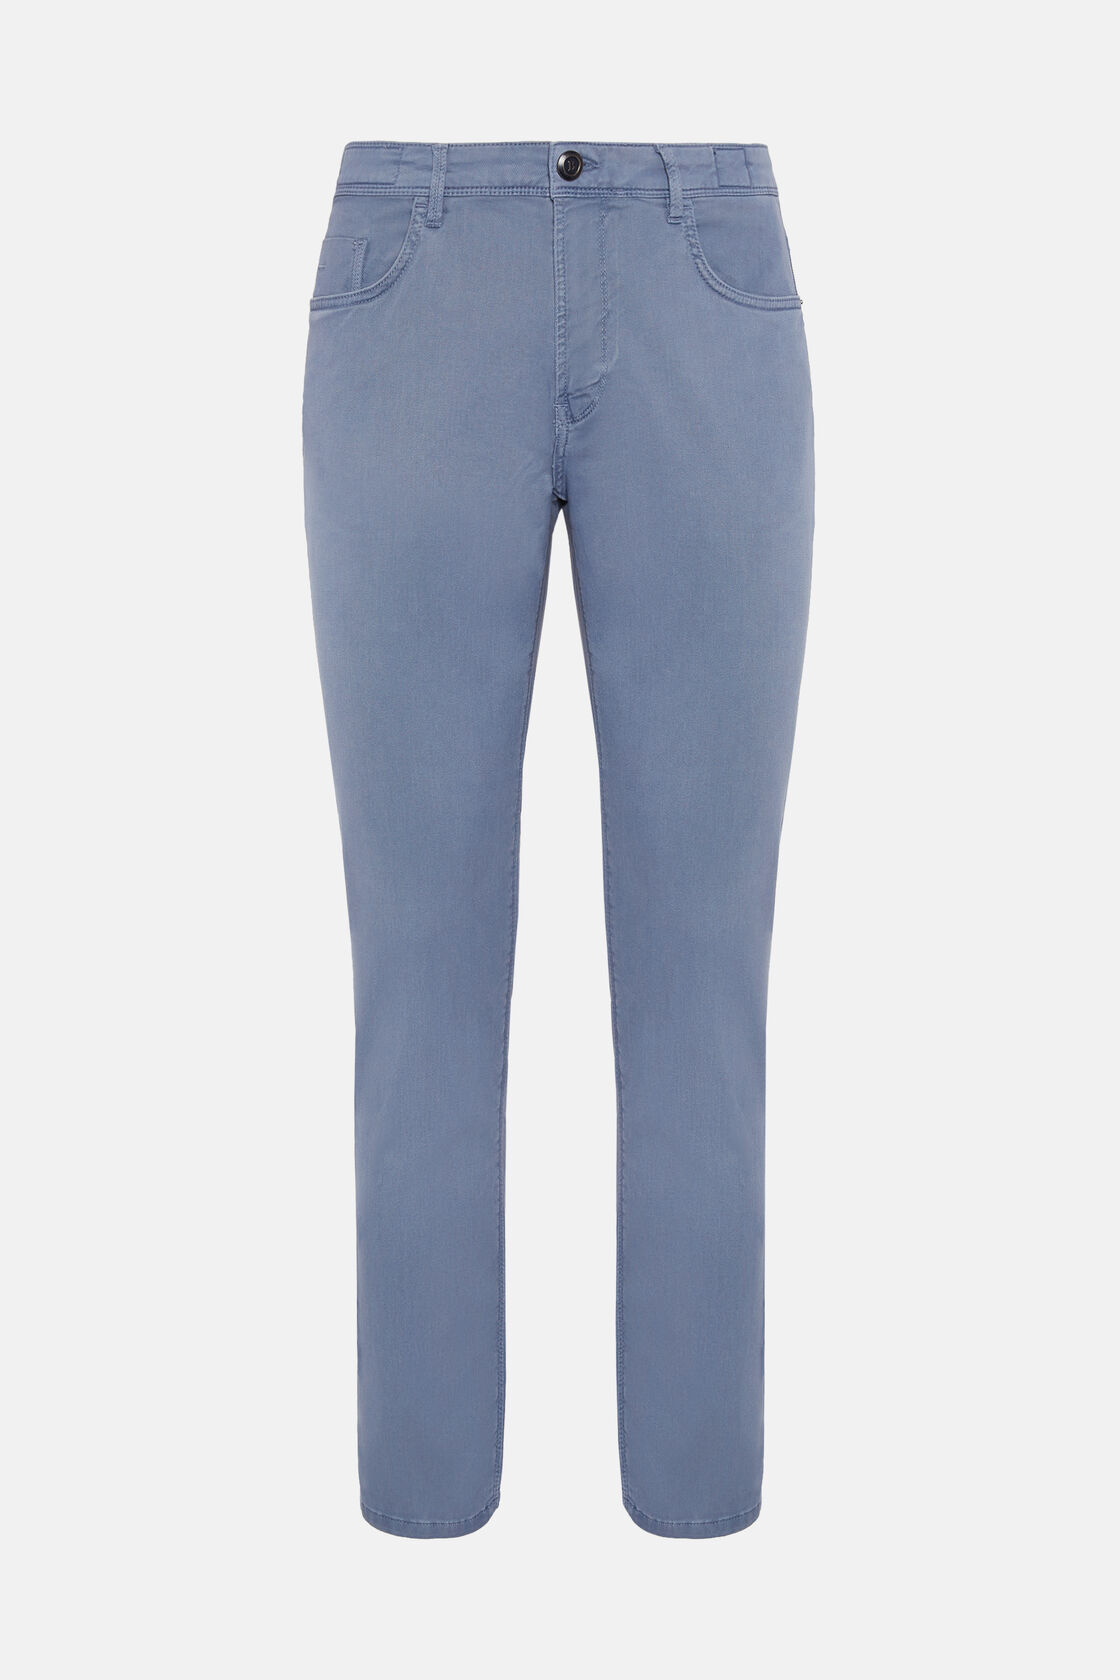 Stretch Katoen/Tencel Jeans, Air-blue, hi-res